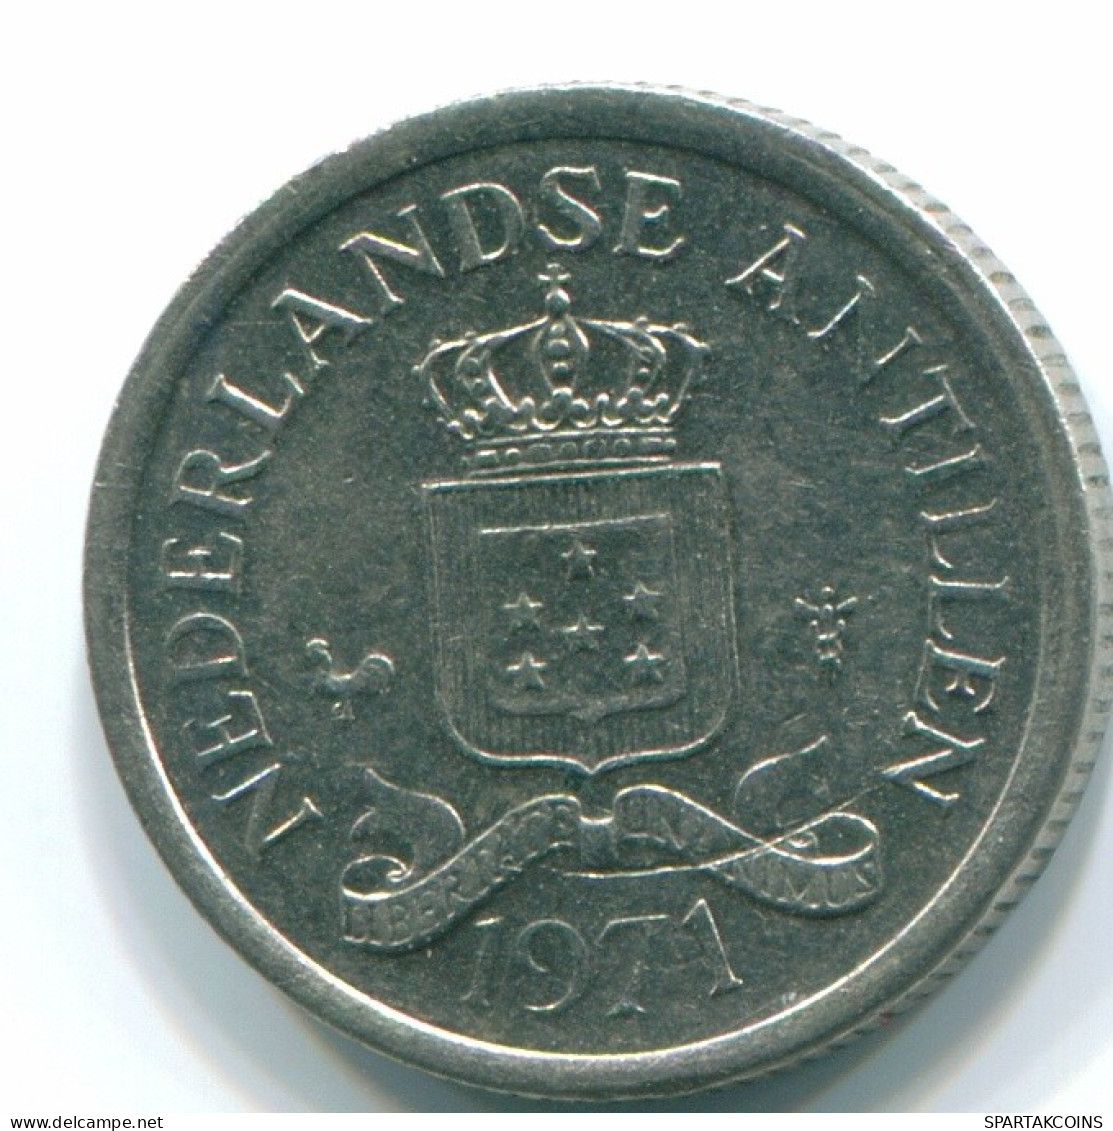 10 CENTS 1971 NIEDERLÄNDISCHE ANTILLEN Nickel Koloniale Münze #S13477.D.A - Niederländische Antillen